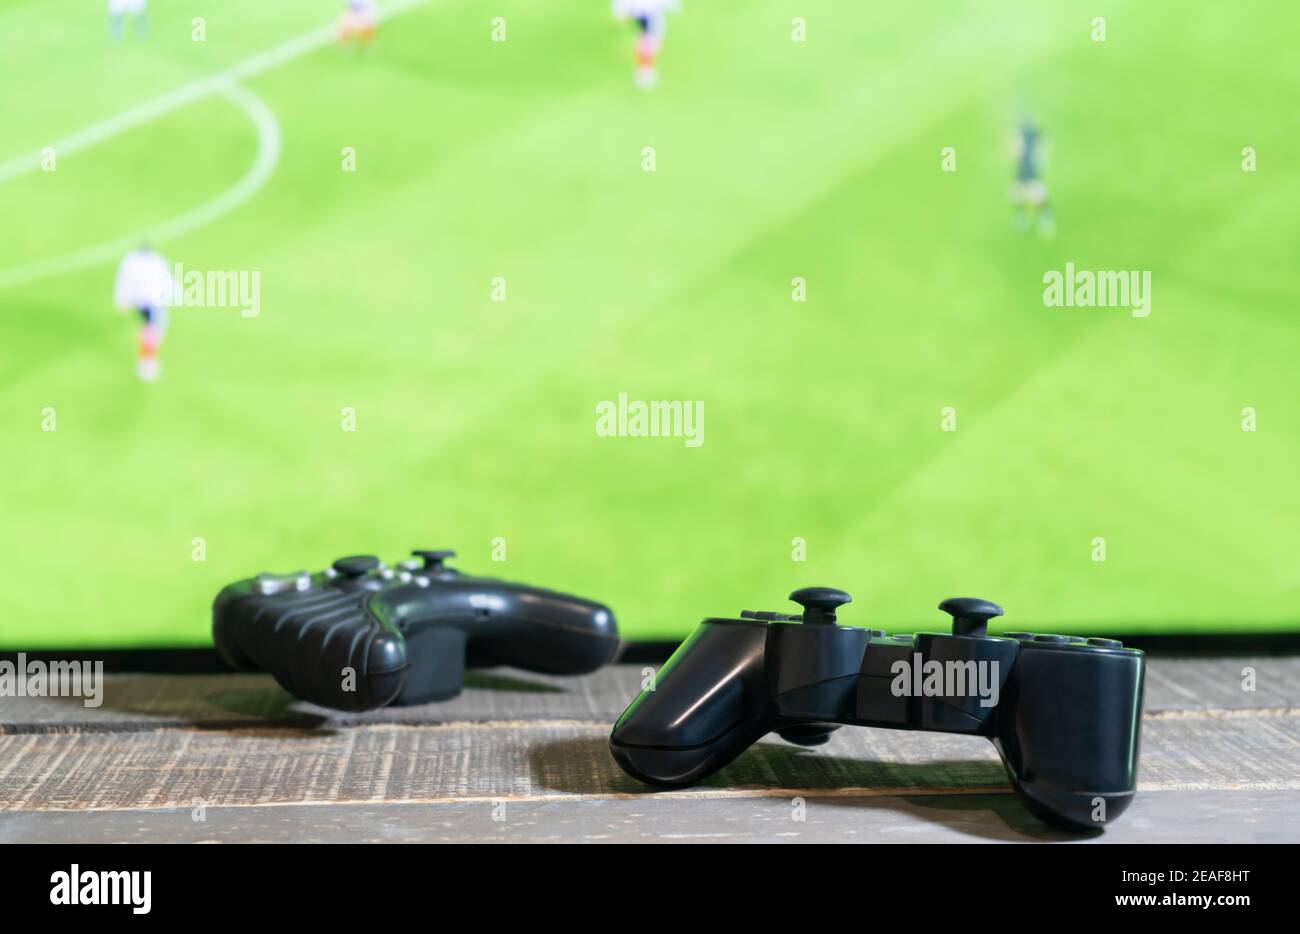 Vue rapprochée de deux consoles de jeux avec match de football, téléviseur à écran vert en arrière-plan.concept de jeu. Banque D'Images